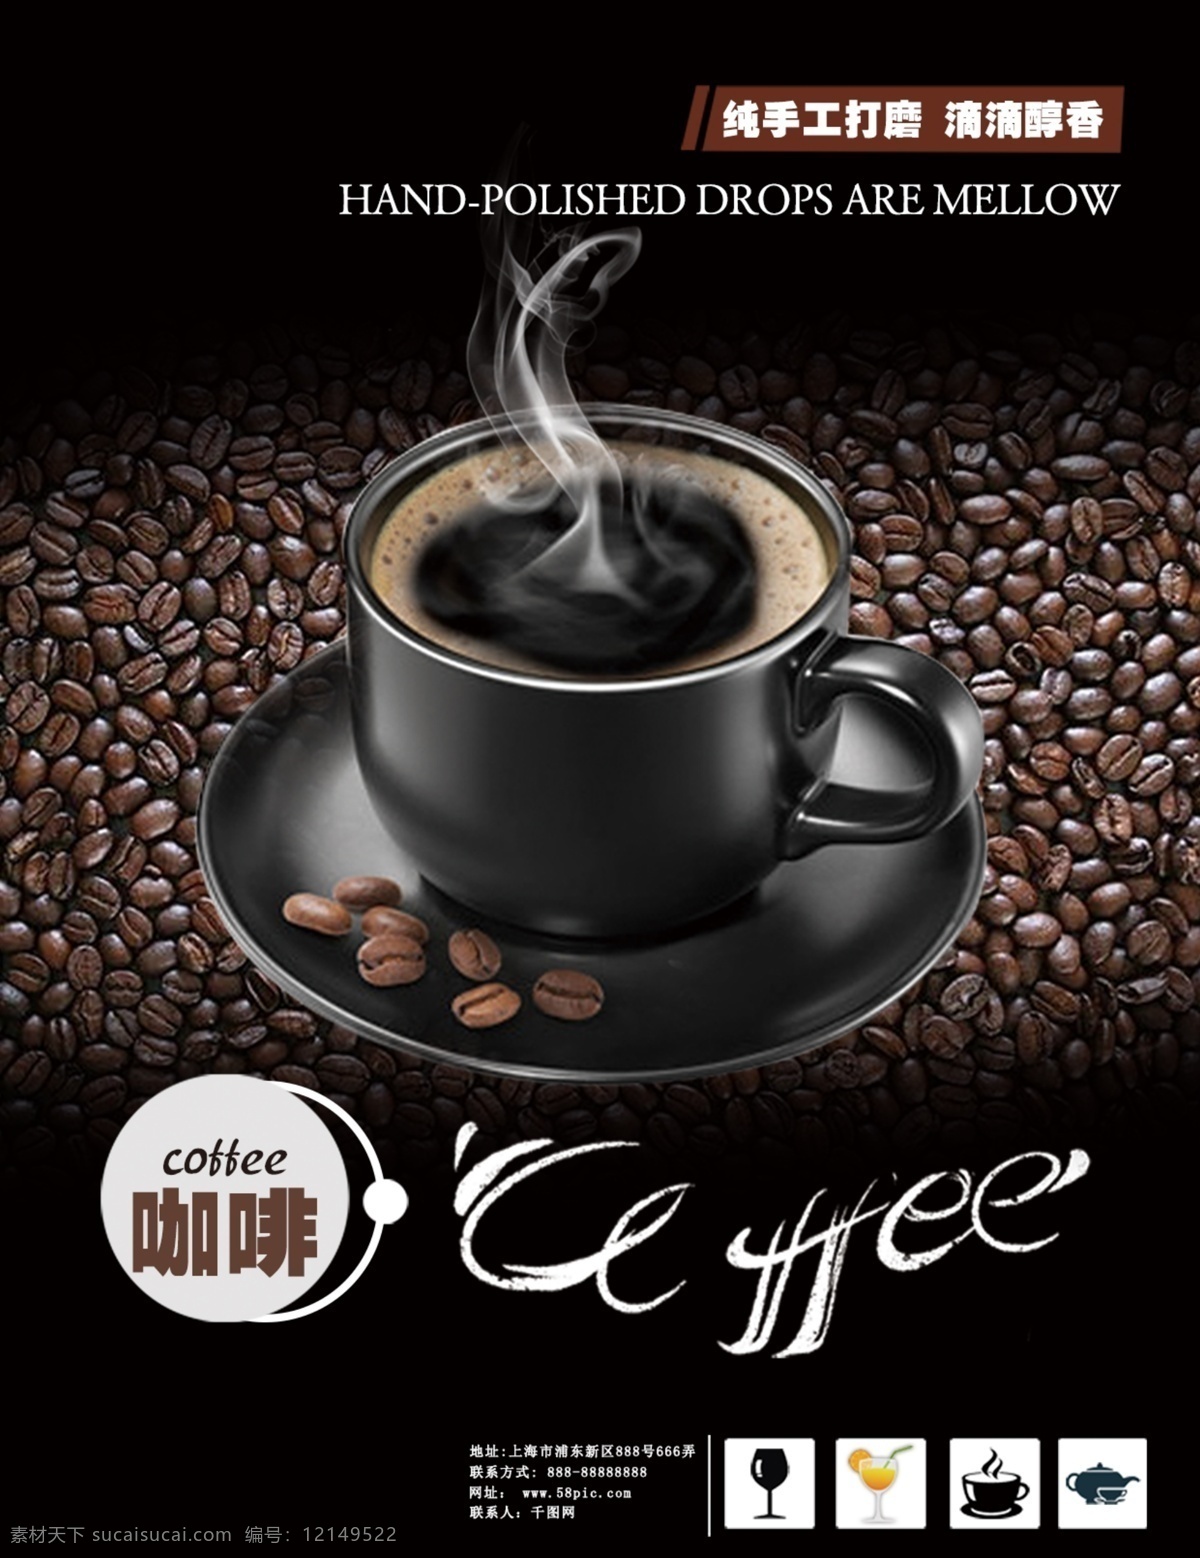 咖啡宣传单 咖啡 咖啡dm单 纯手工现磨 滴滴醇香 分层图 分层